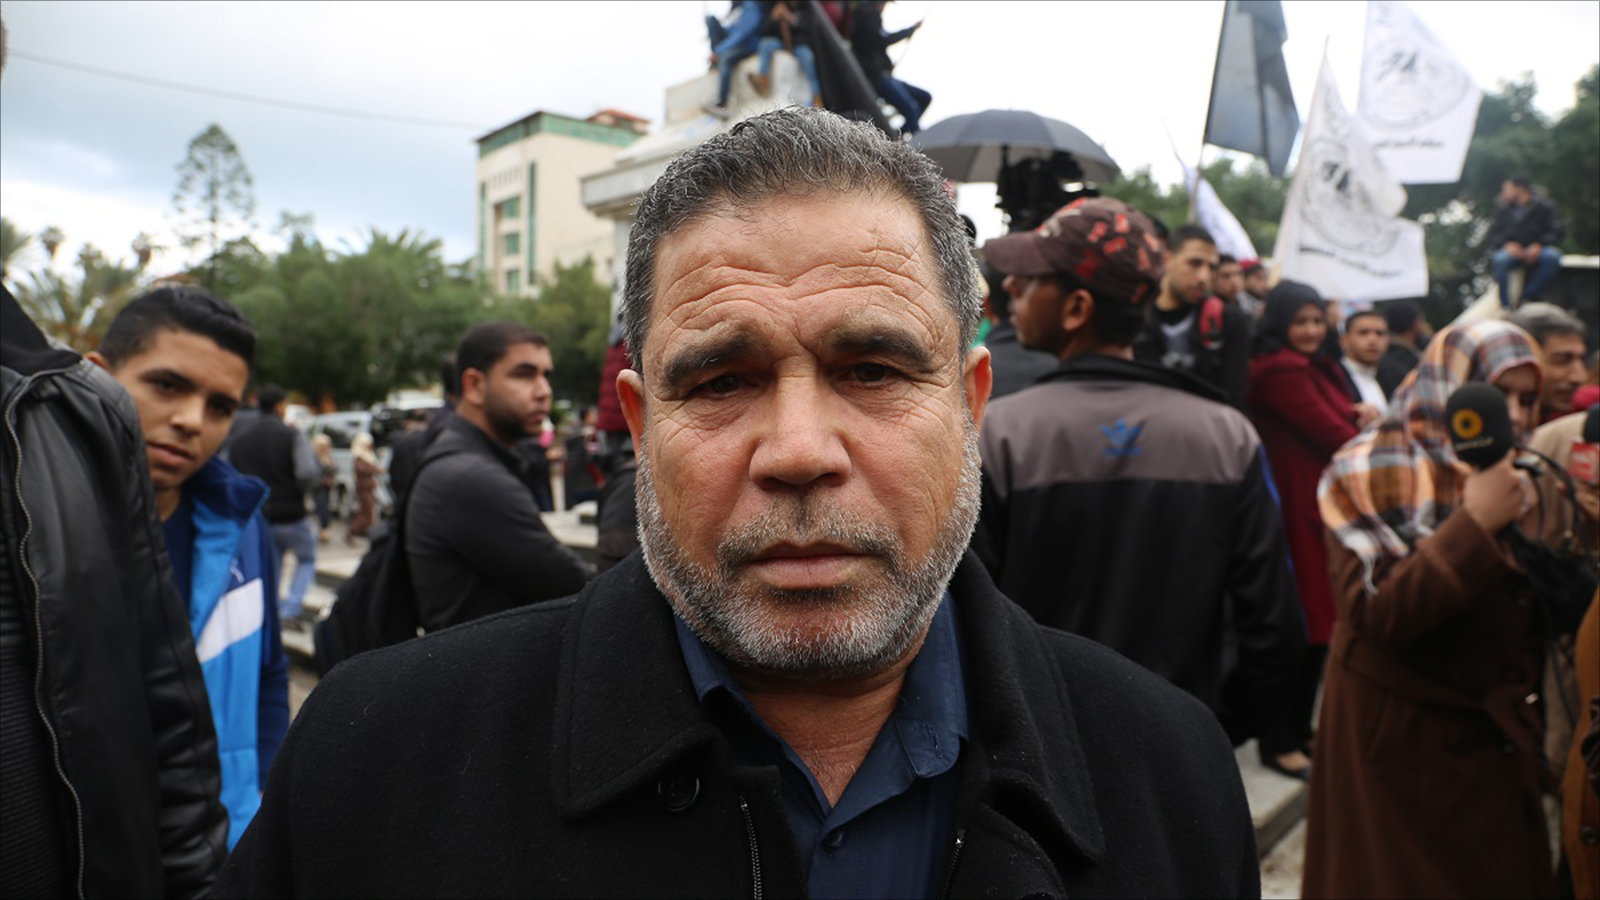 ‪البردويل: حماس مع إعادة بناء وتفعيل منظمة التحرير على أسس ديمقراطية بما يحفظ التمثيل للجميع‬ (الجزيرة)